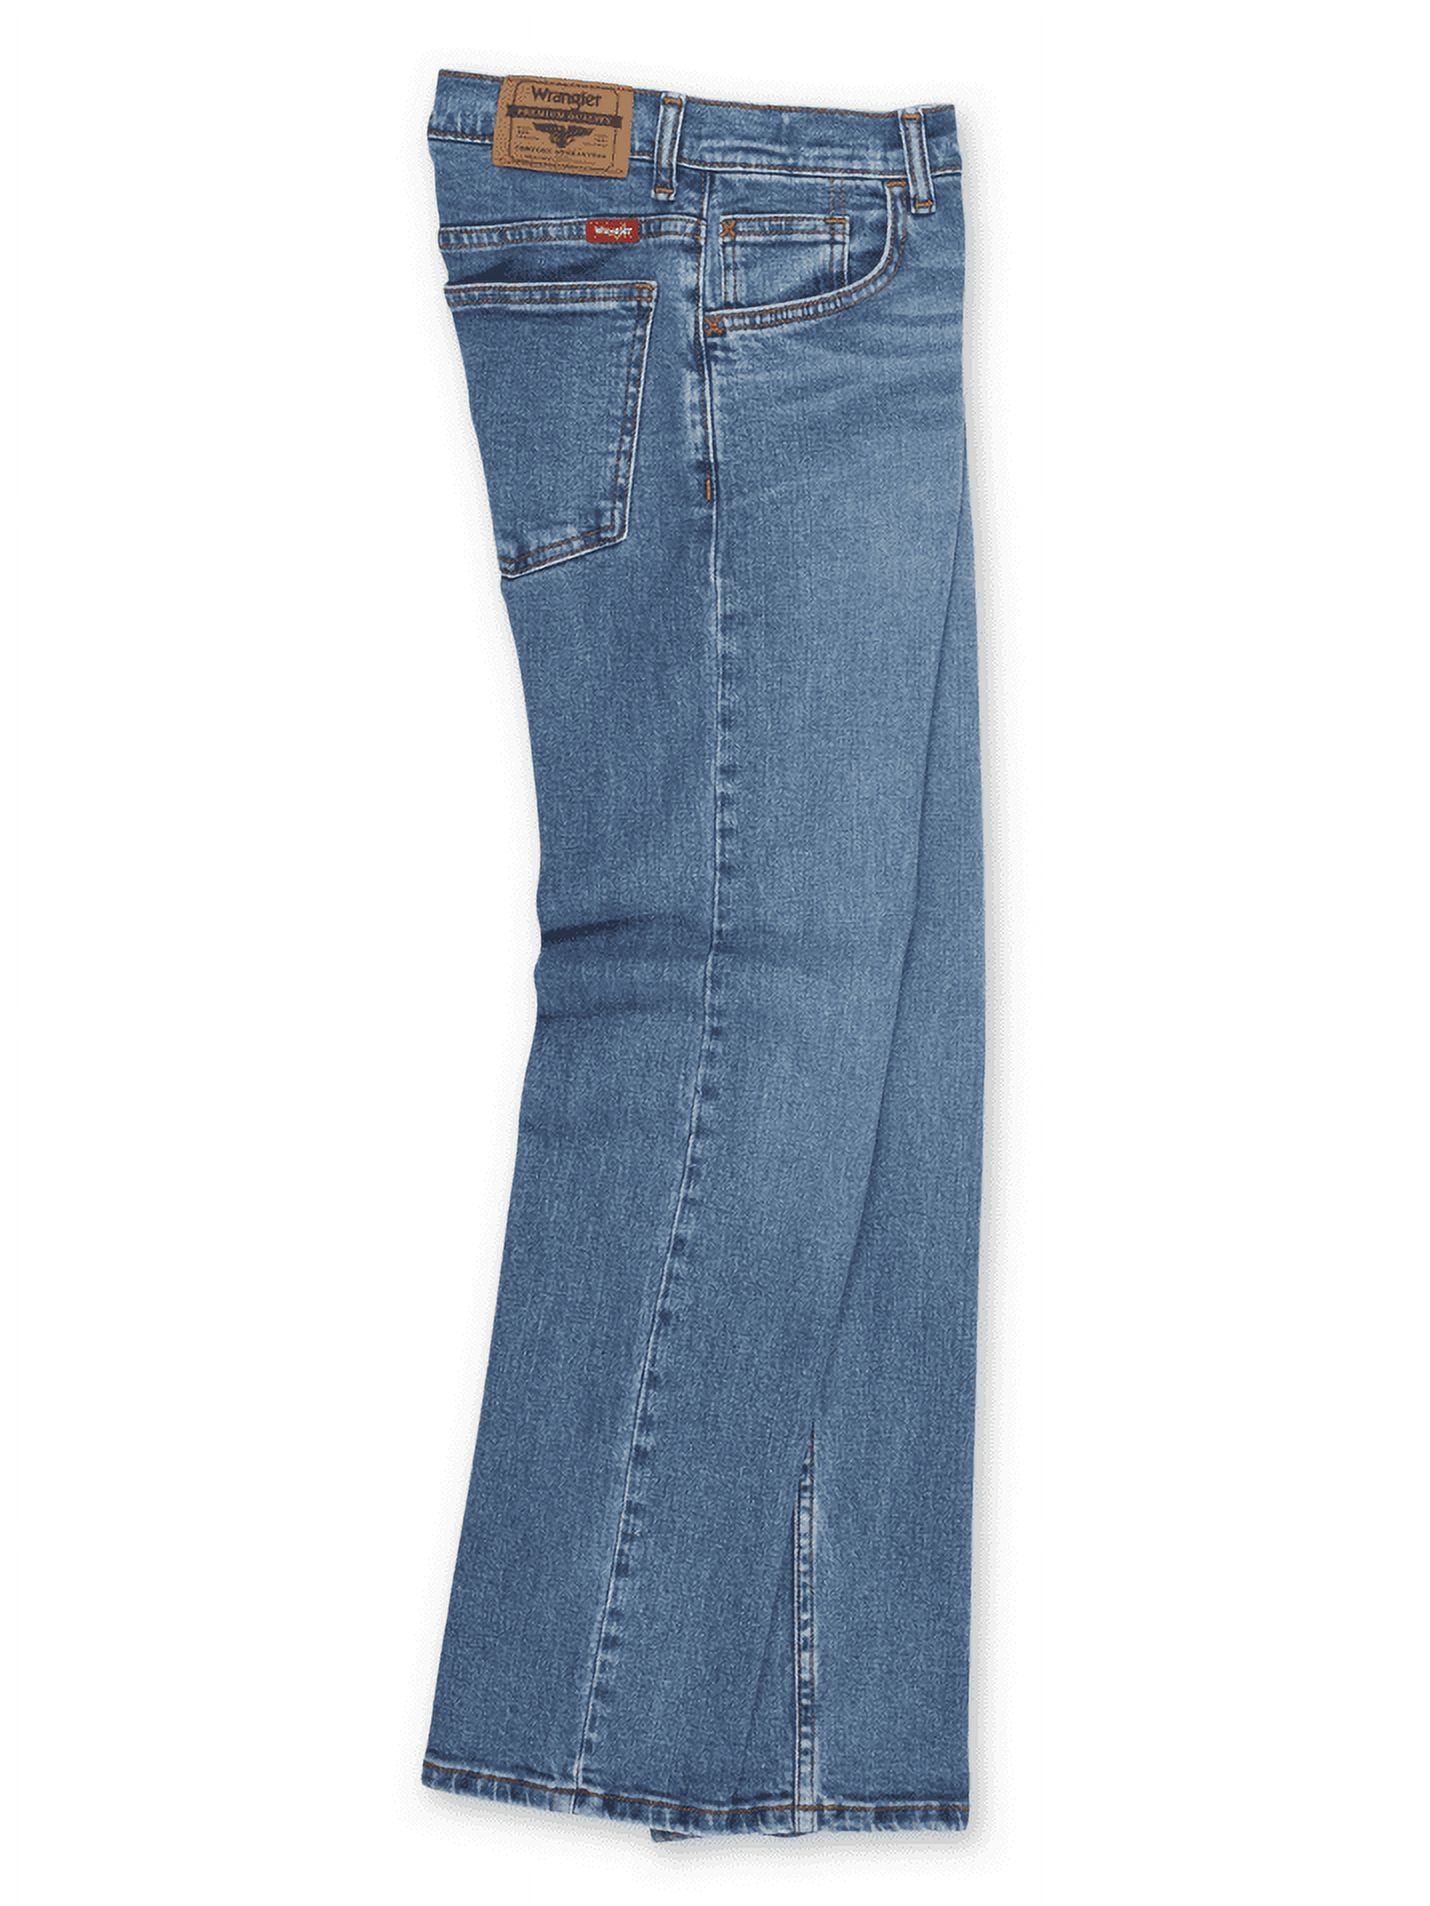 Wrangler Boys Straight Fit Denim Jeans, Sizes 4-18 Regular, Slim, & Husky - image 3 of 6